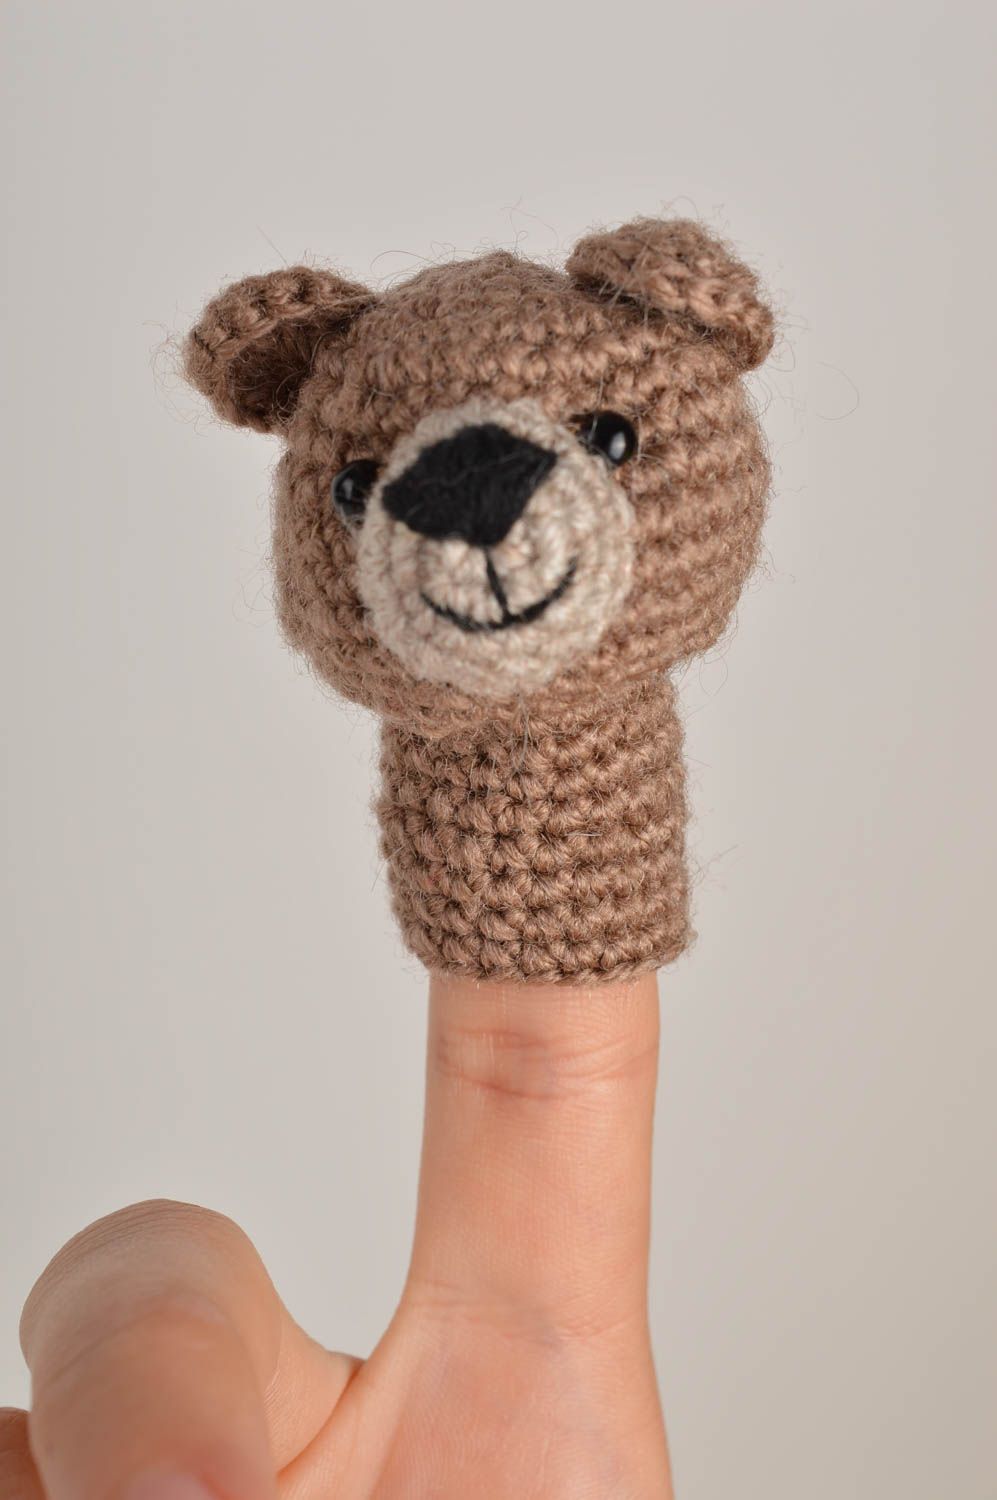 Мягкая игрушка подарок ребенку хенд мейд пальчиковая игрушка крючком медведь фото 1